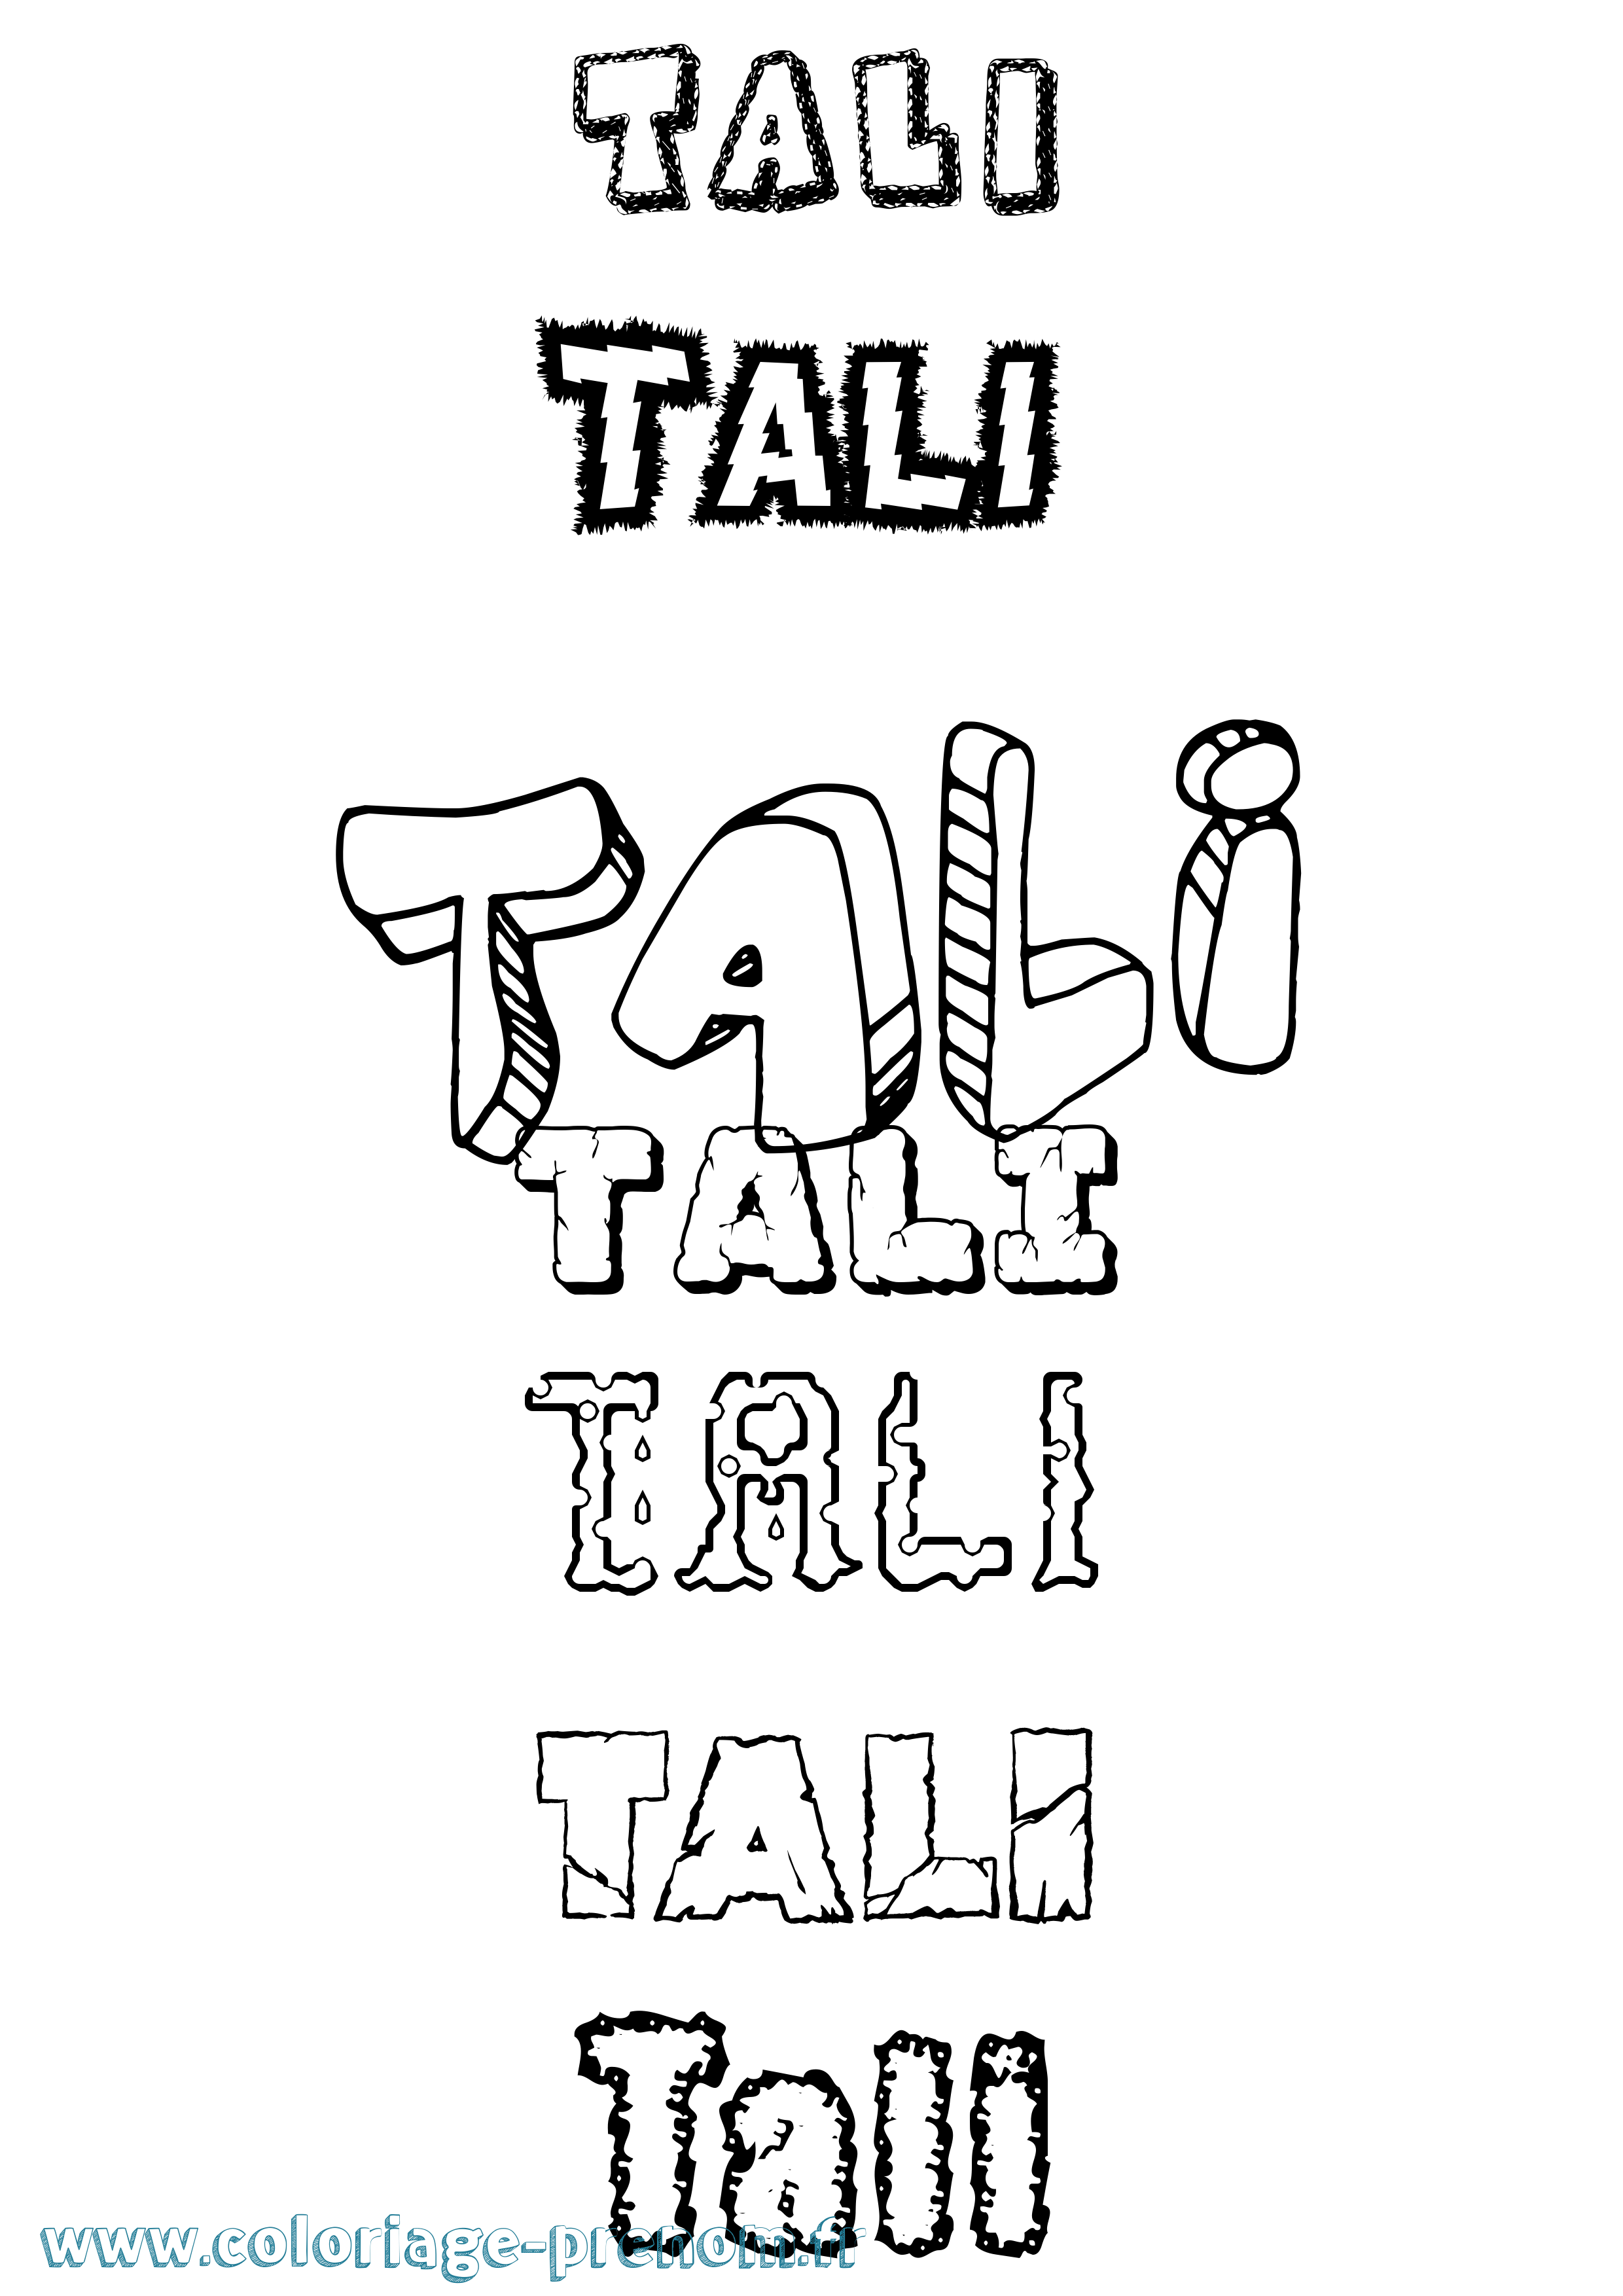 Coloriage prénom Tali